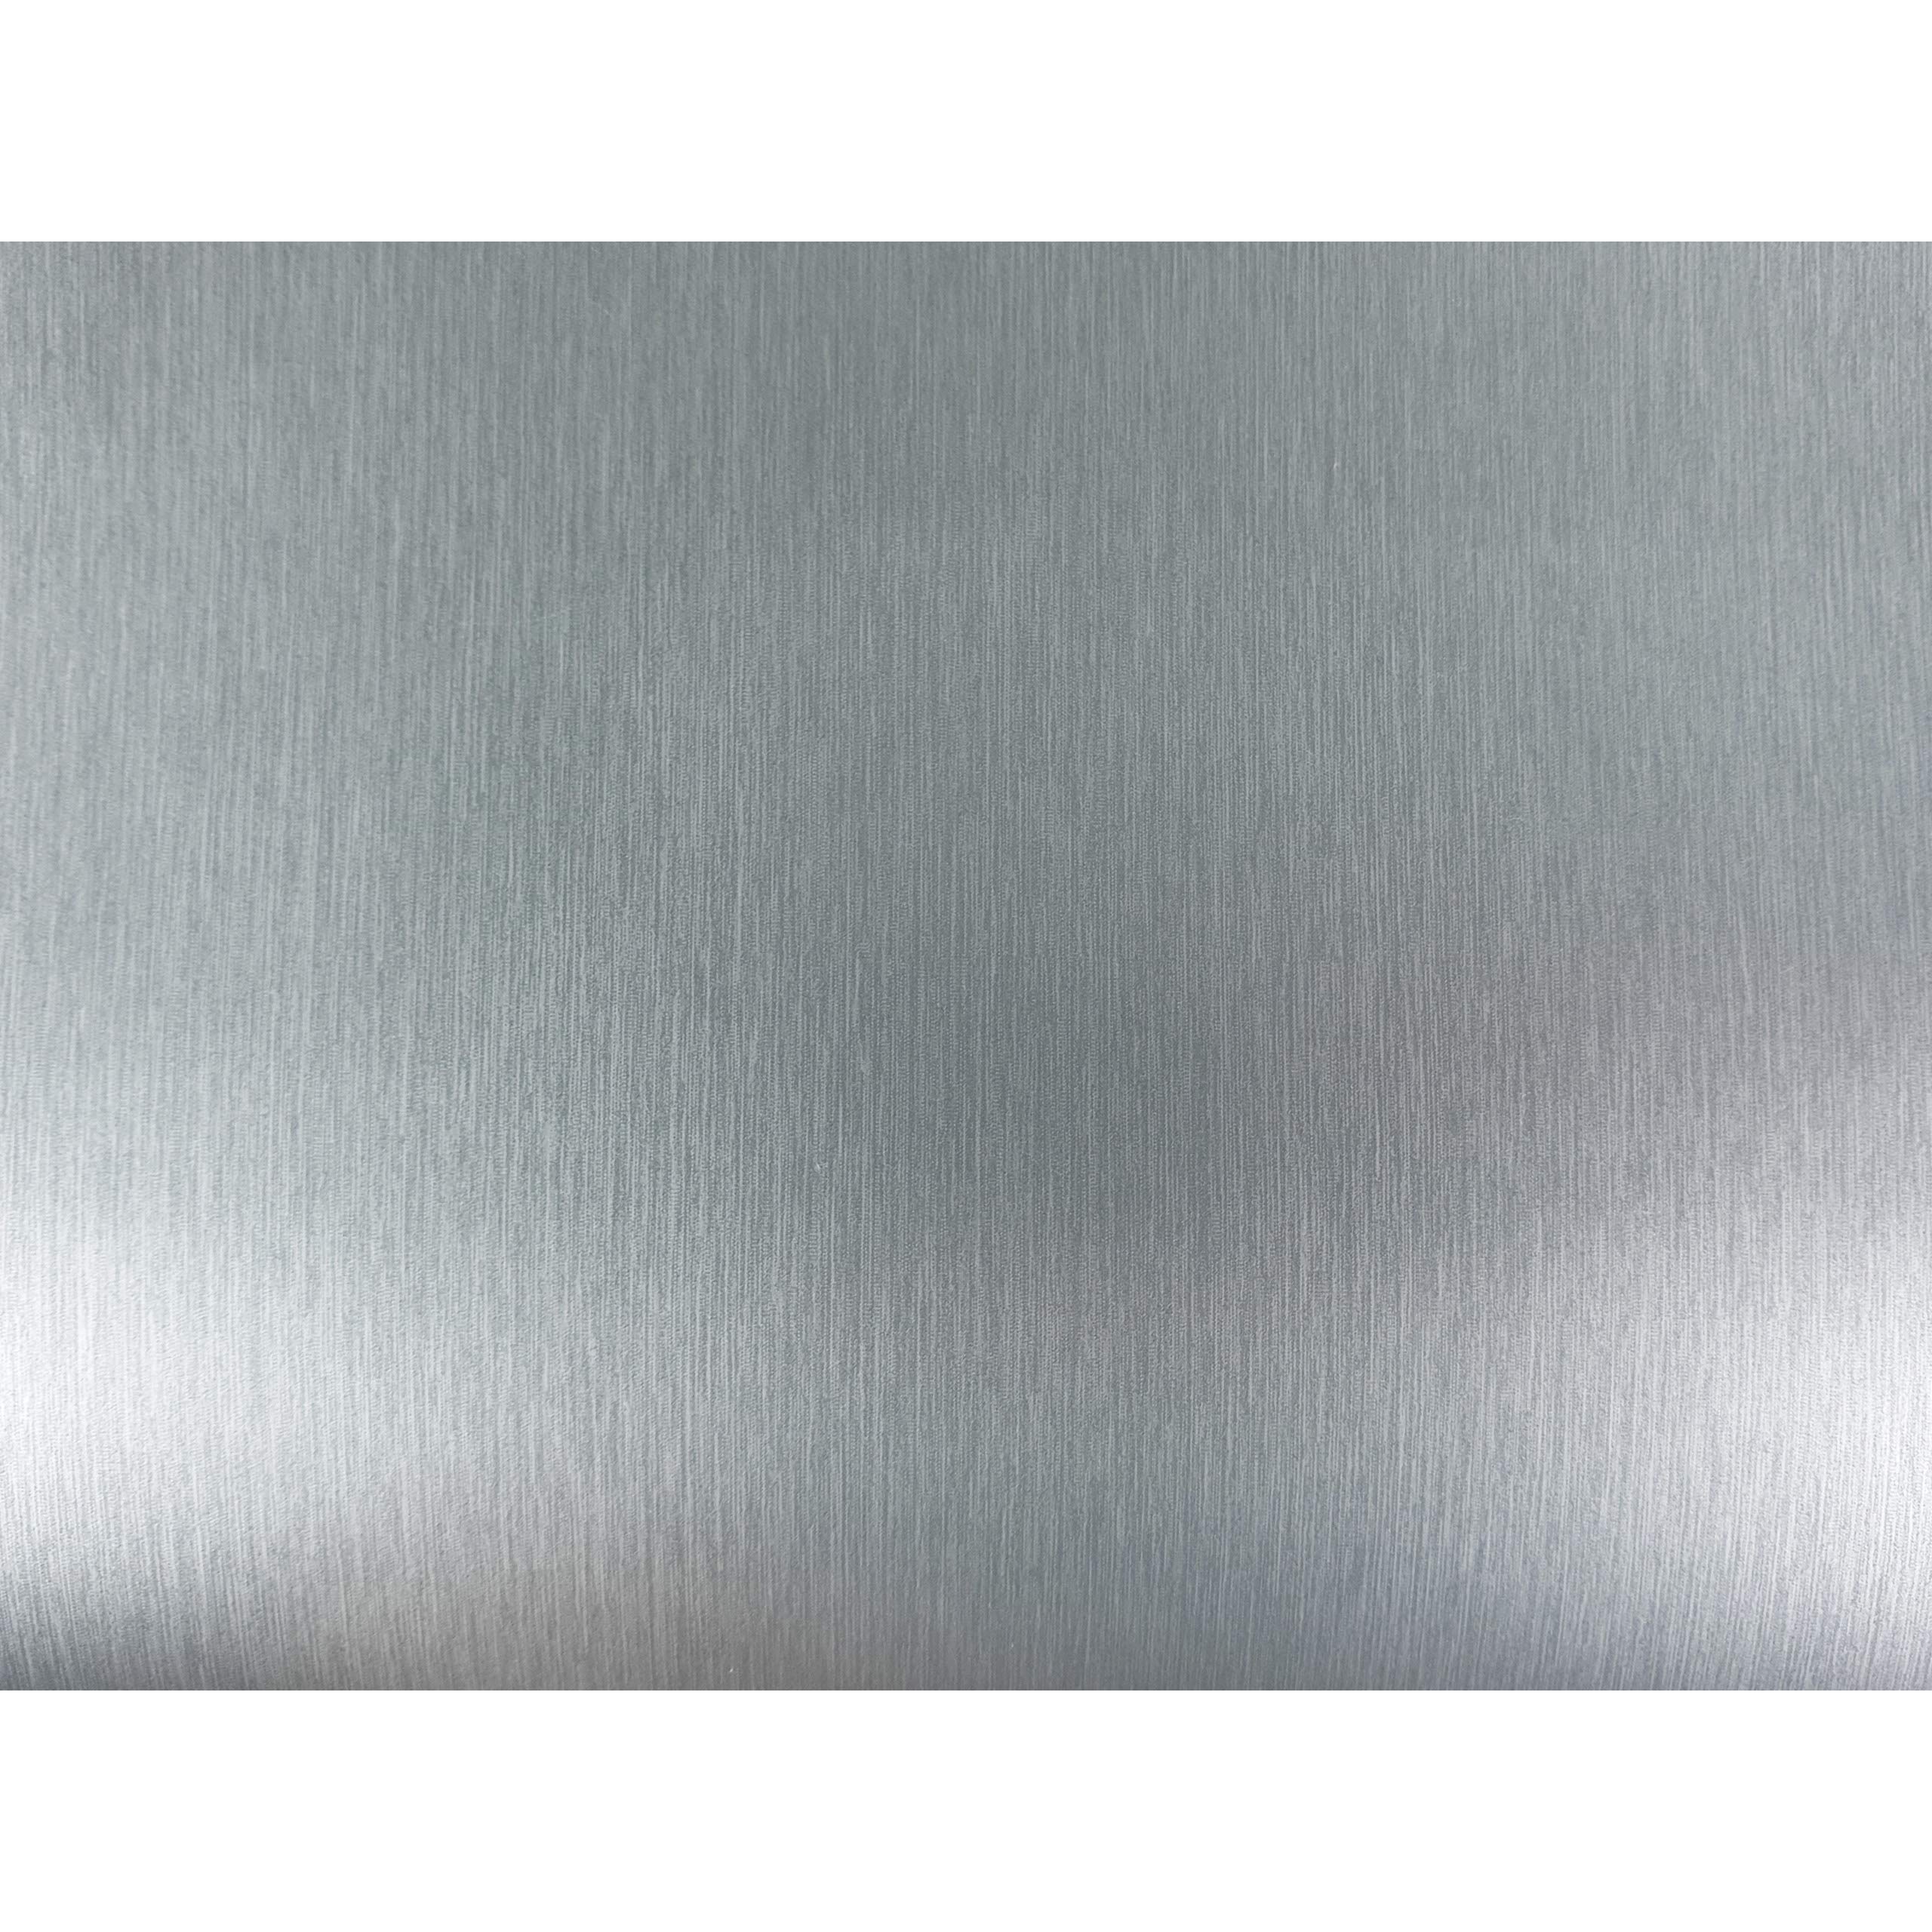 DecoMeister Klebefolien in Aluminium-Optik feingebürstet Aluminiumblechlfolien Deko-Folien Aluminiumfolie Selbstklebefolie Möbelfolie Selbstklebend 67,5x740 cm Blechfolie Aluminium Metallic Glatt